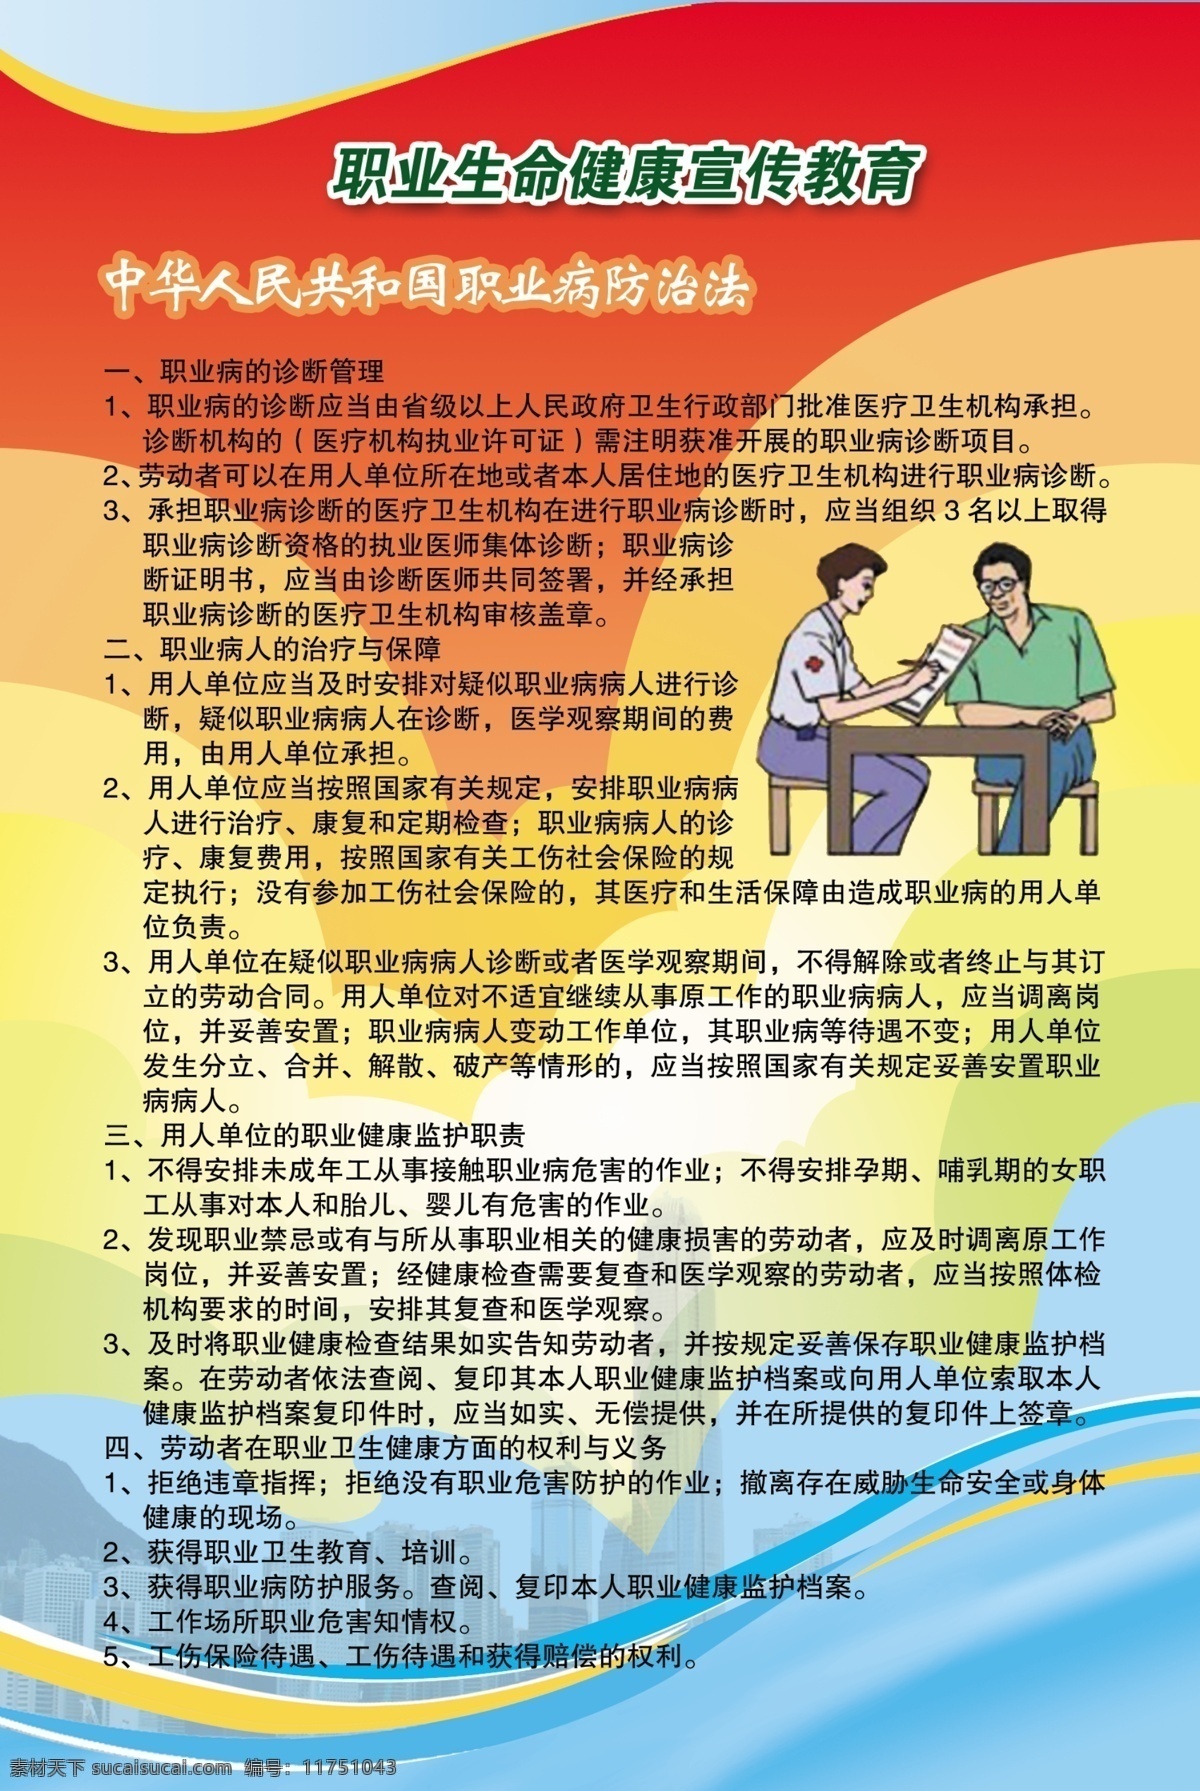 职业 生命 健康 宣传教育 挂图 展板 模板 宣传 教育 宣传教育挂图 中华人民共和国 职业病 防治法 广告 源文件